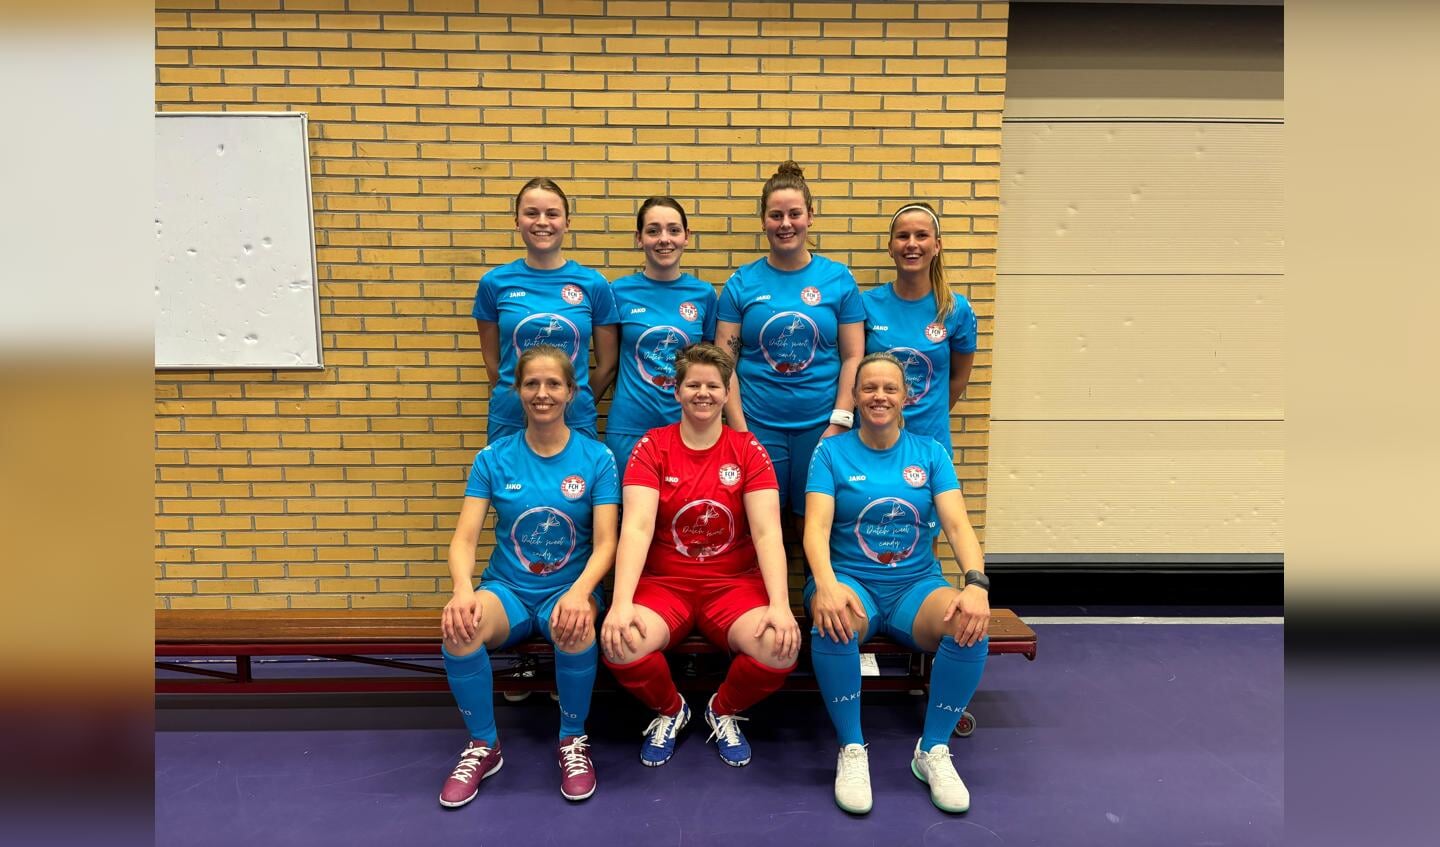 De trotse dames van Futsal Club Heerenveen die af lijken te steven op het kampioenschap